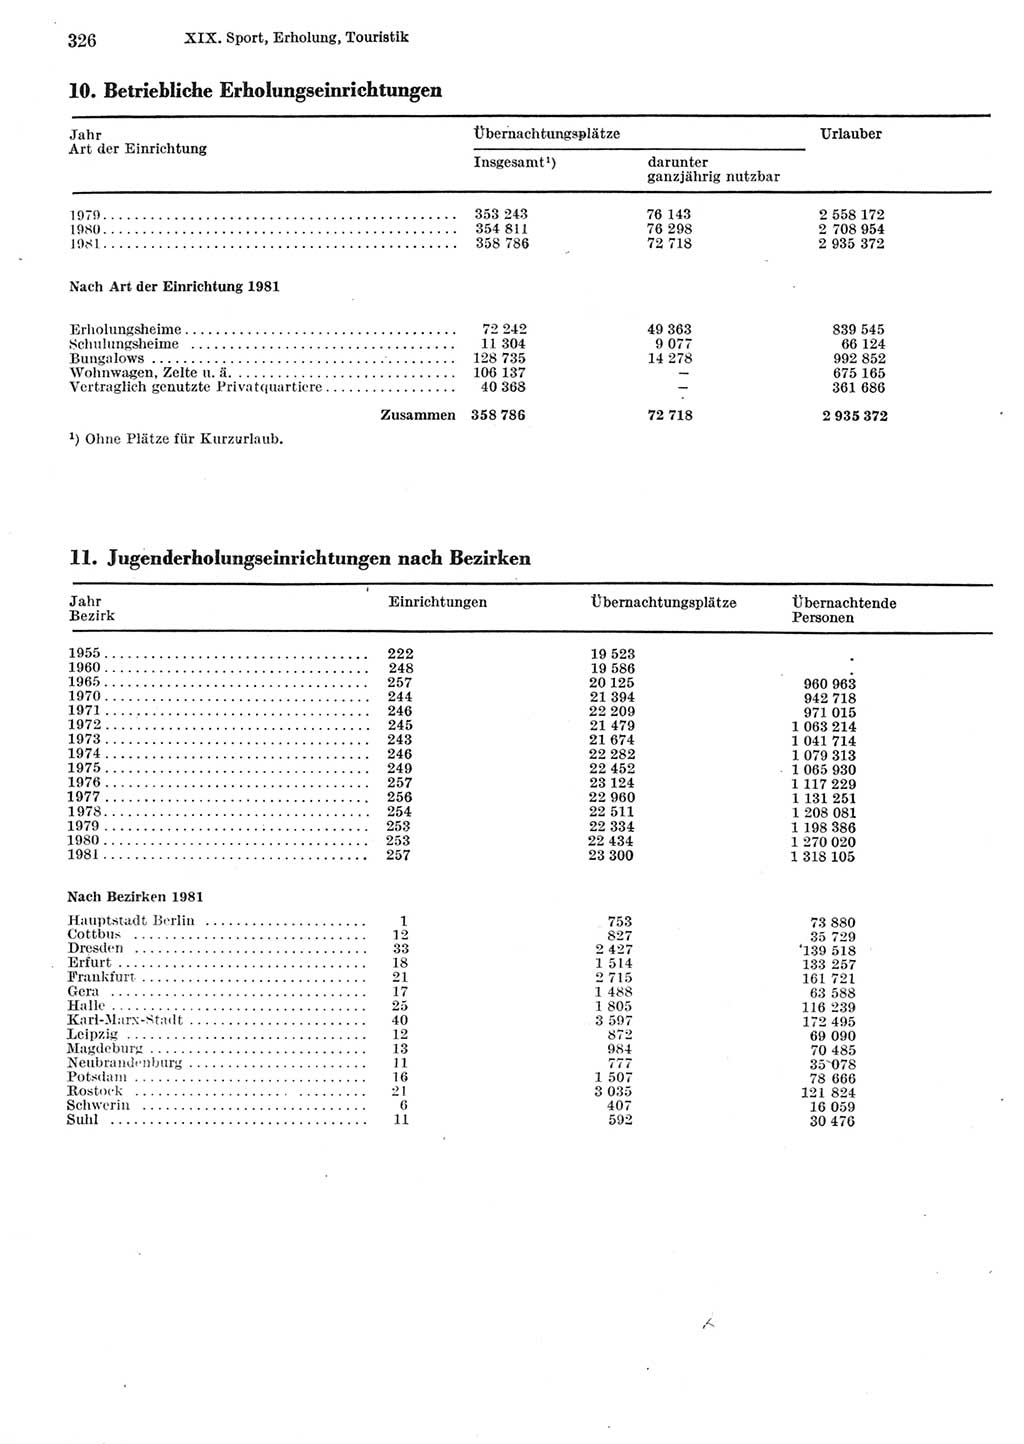 Statistisches Jahrbuch der Deutschen Demokratischen Republik (DDR) 1982, Seite 326 (Stat. Jb. DDR 1982, S. 326)